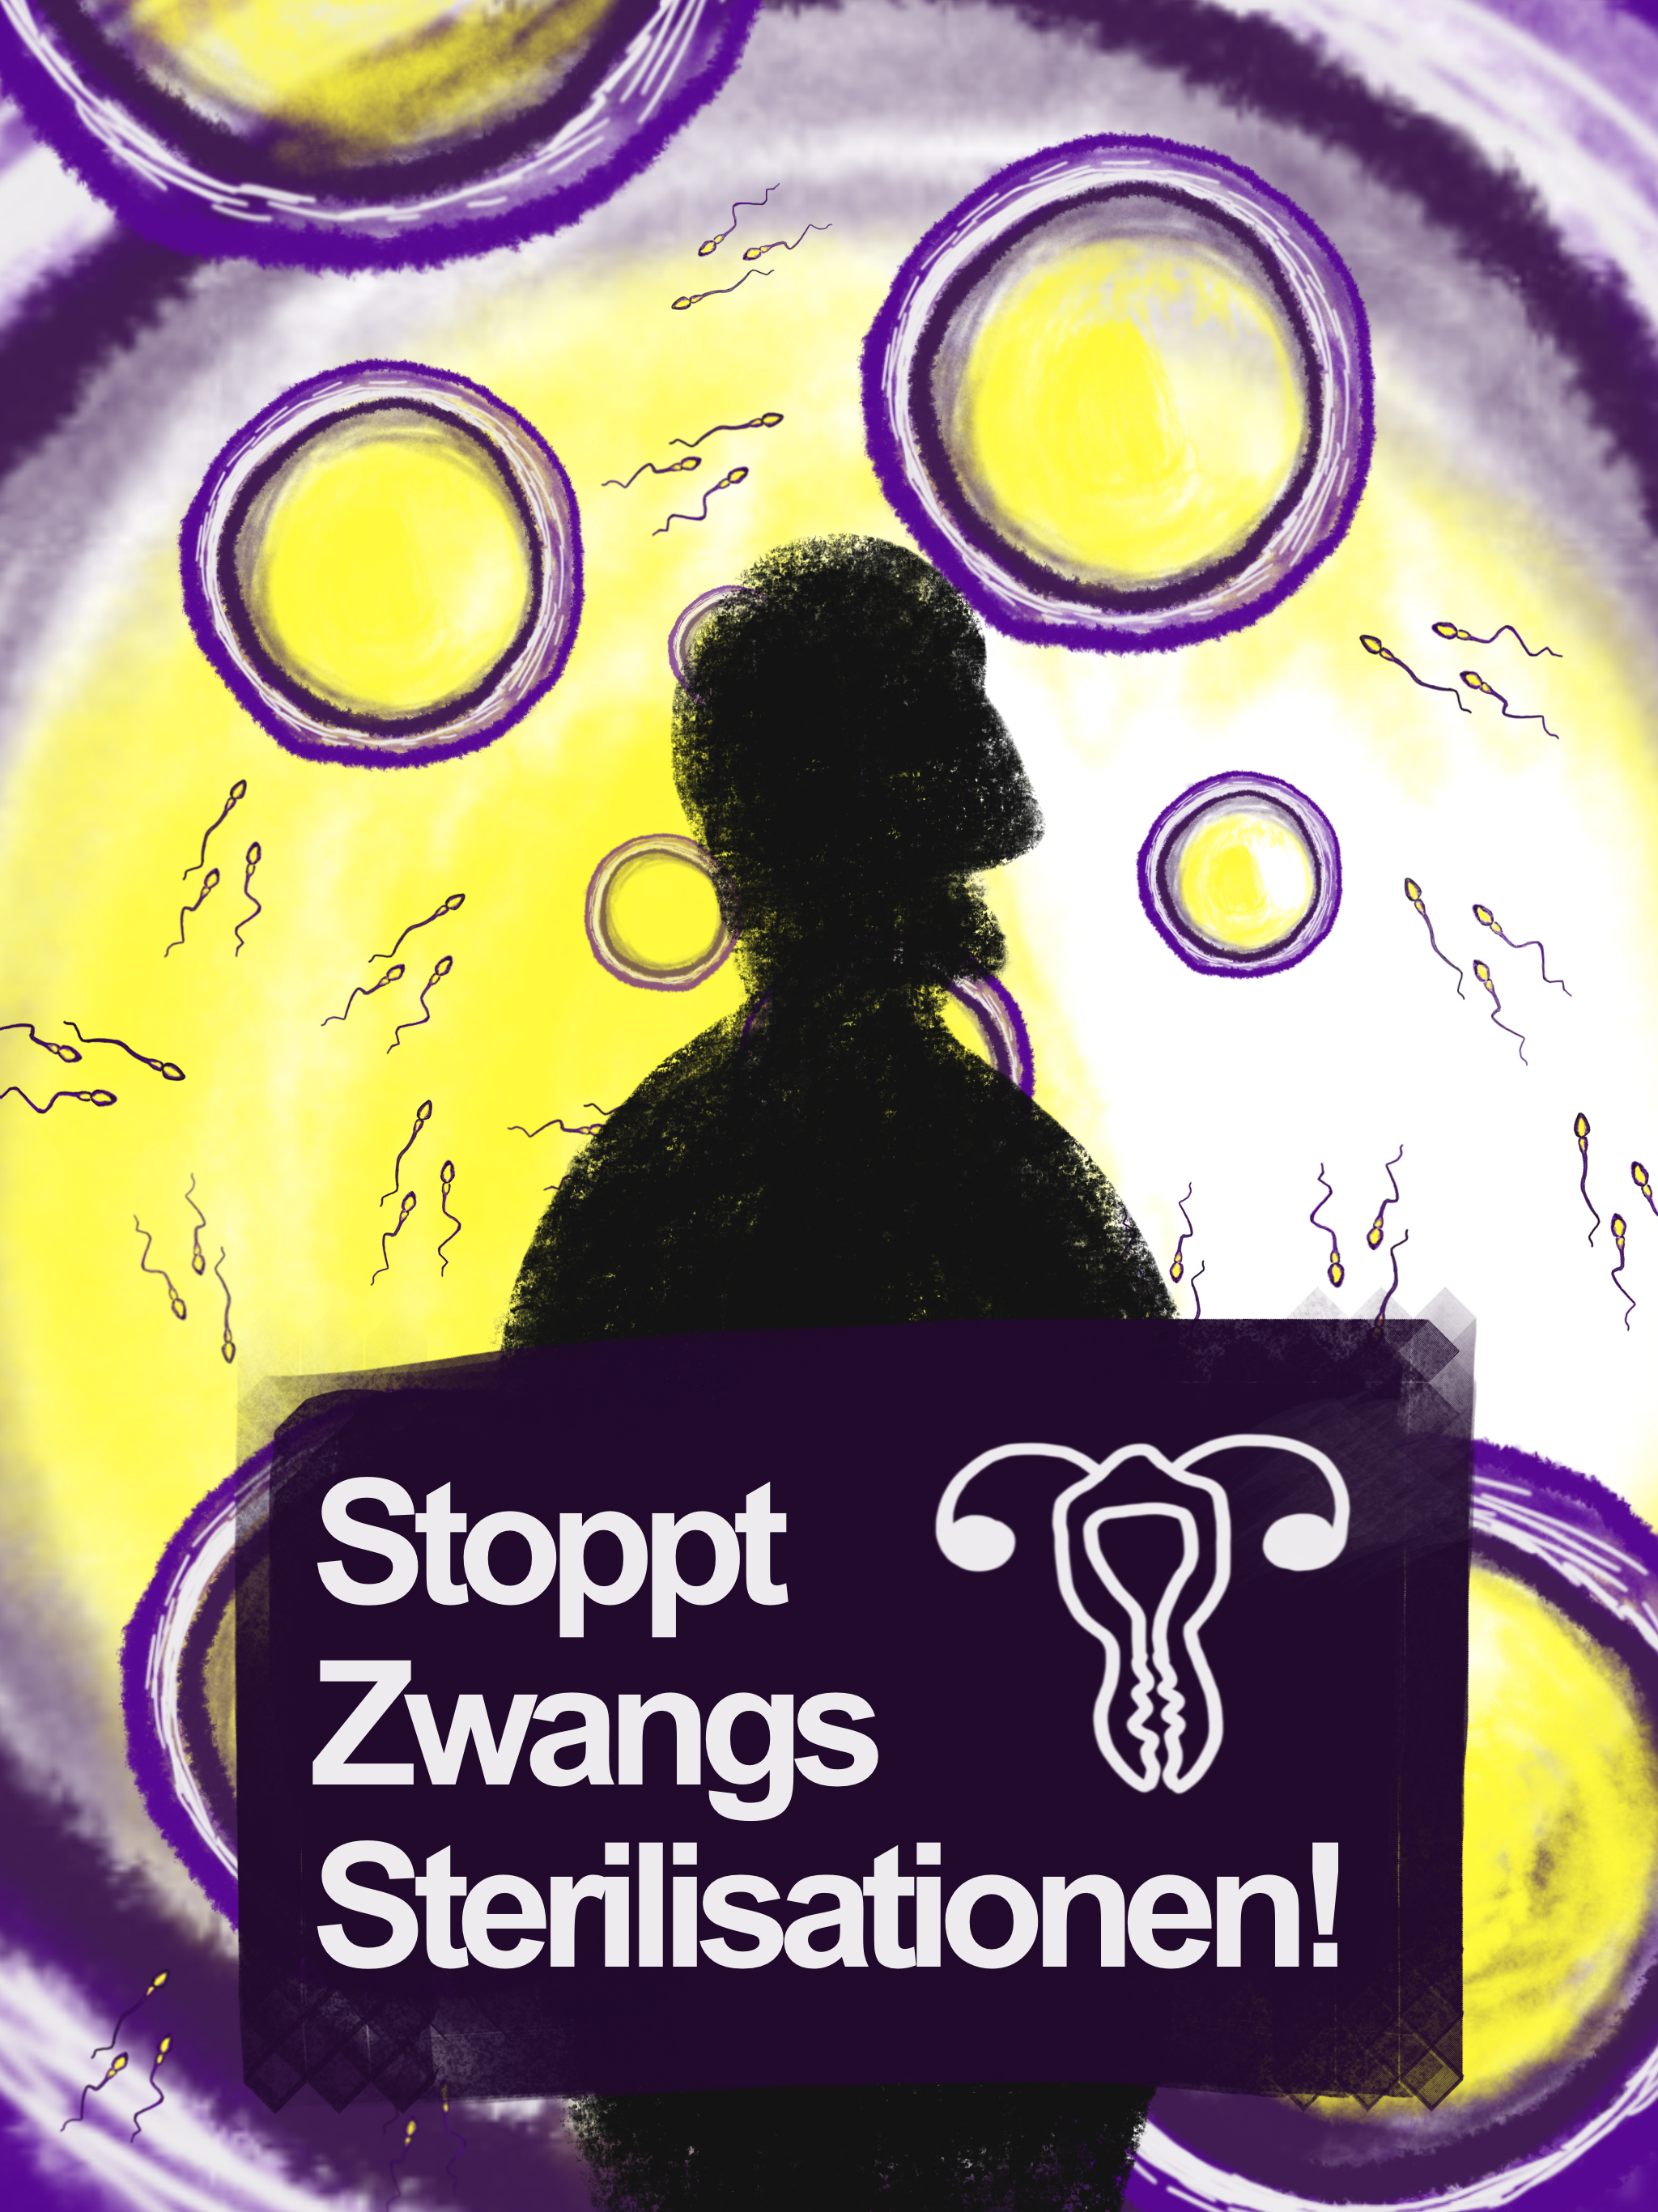 Bild in geld und violette mit einer schwarzen schattenartigen Figur mit dem Text Stoppt Zwangs Sterilisationen